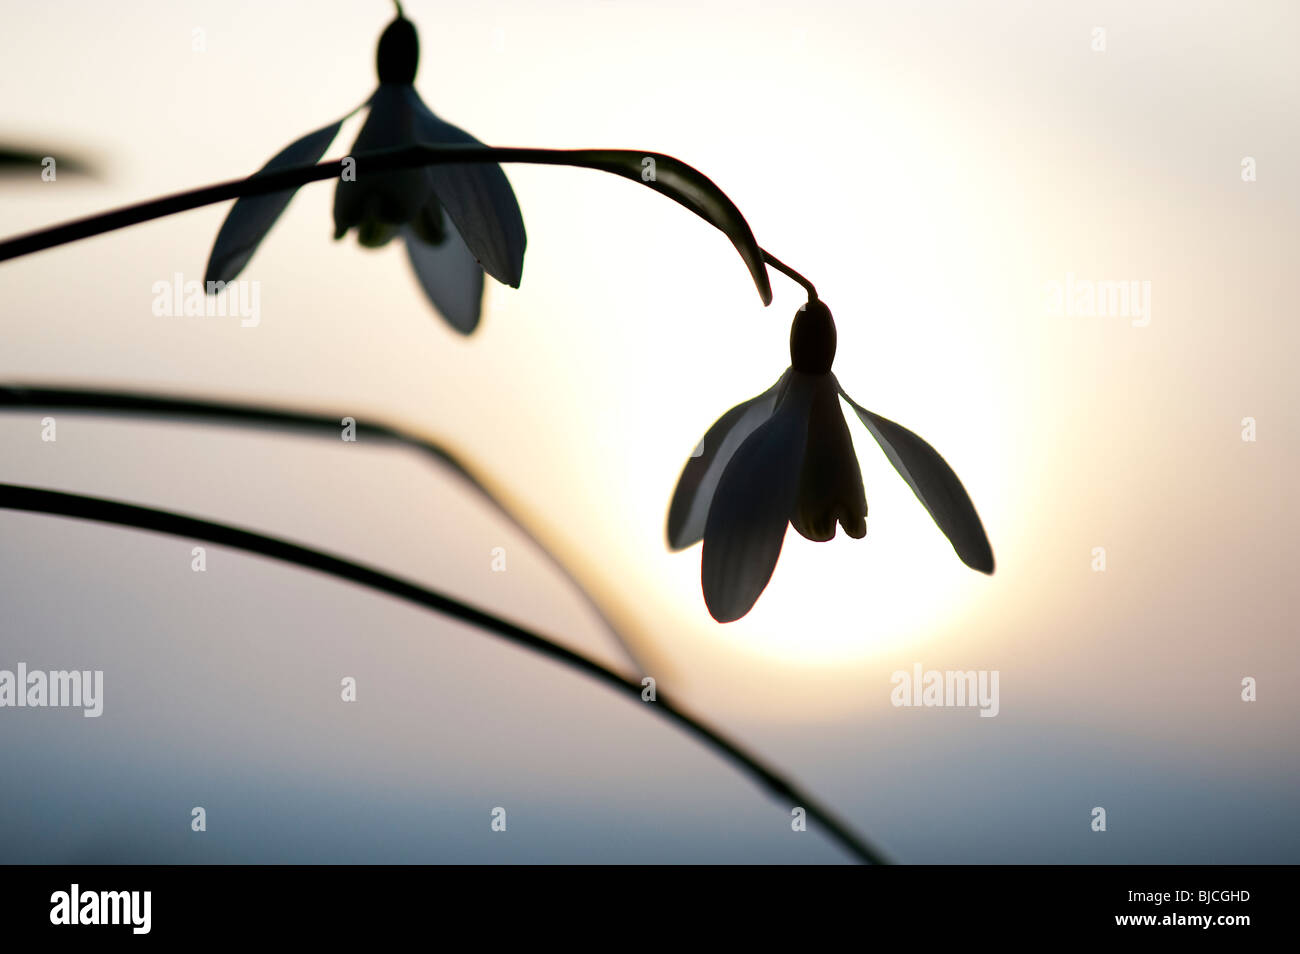 Schneeglöckchen Blüte Silhouette gegen eine winterliche Sonne. Großbritannien Stockfoto